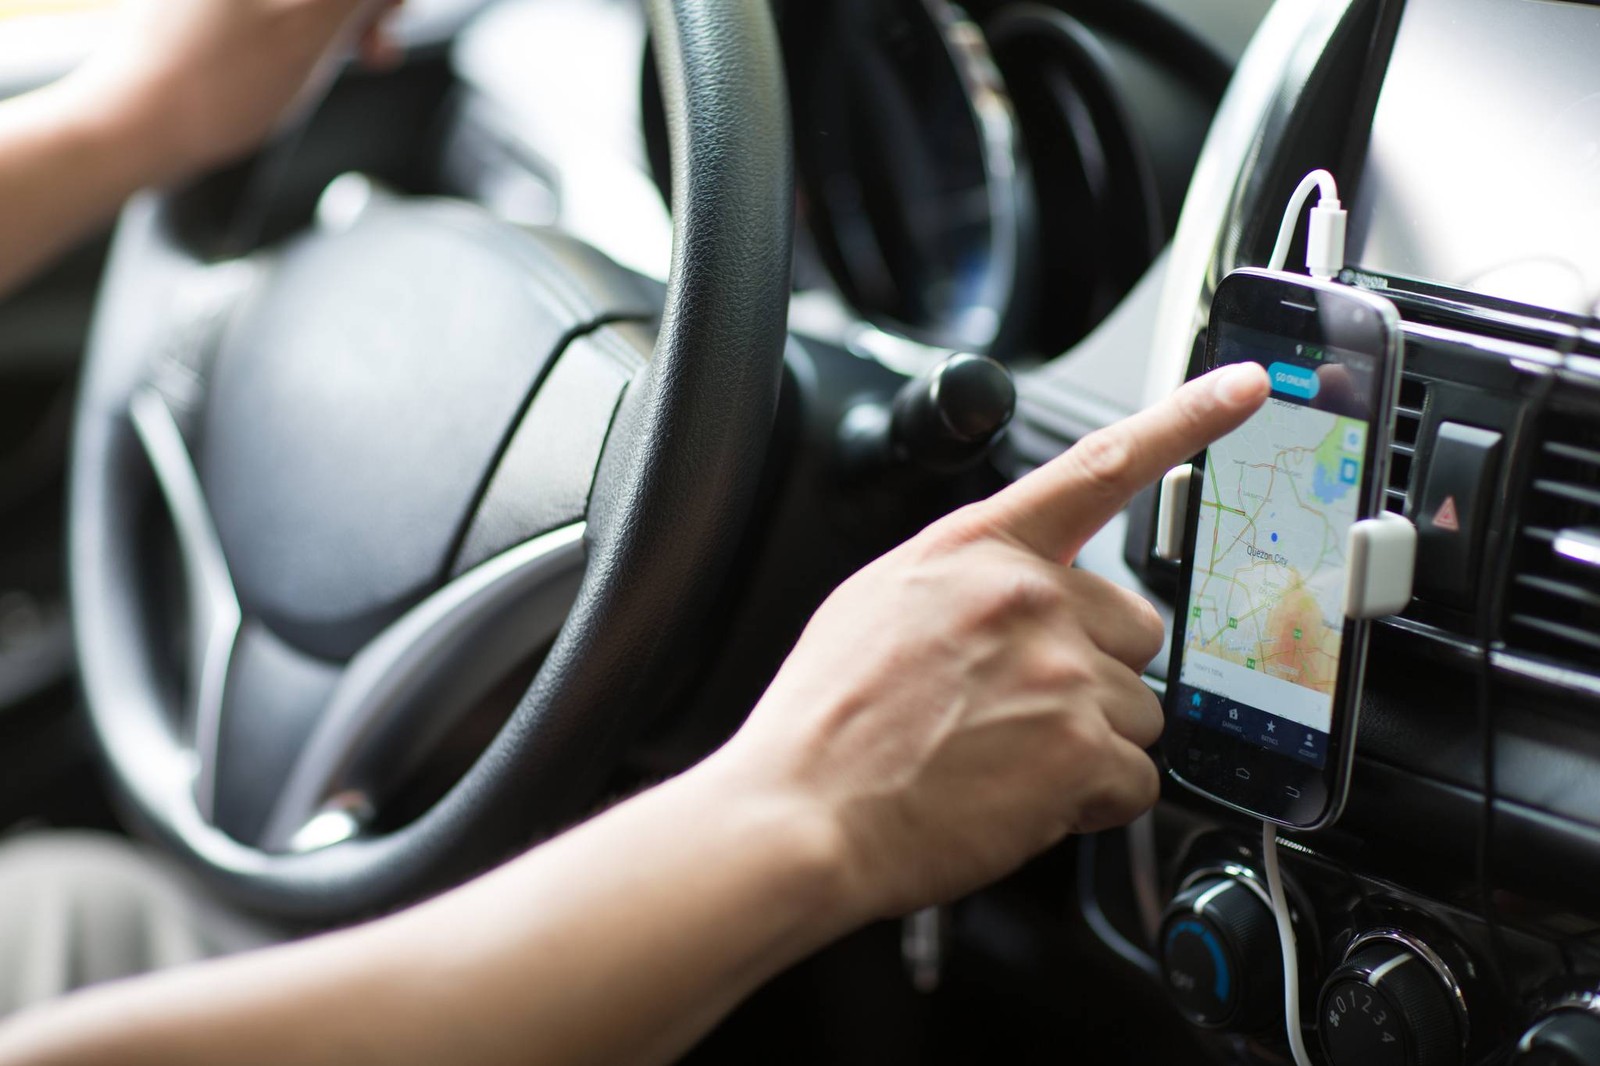 Empresas de nibus pedem fim do Uber Juntos e ressarcimento por perda de passageiros